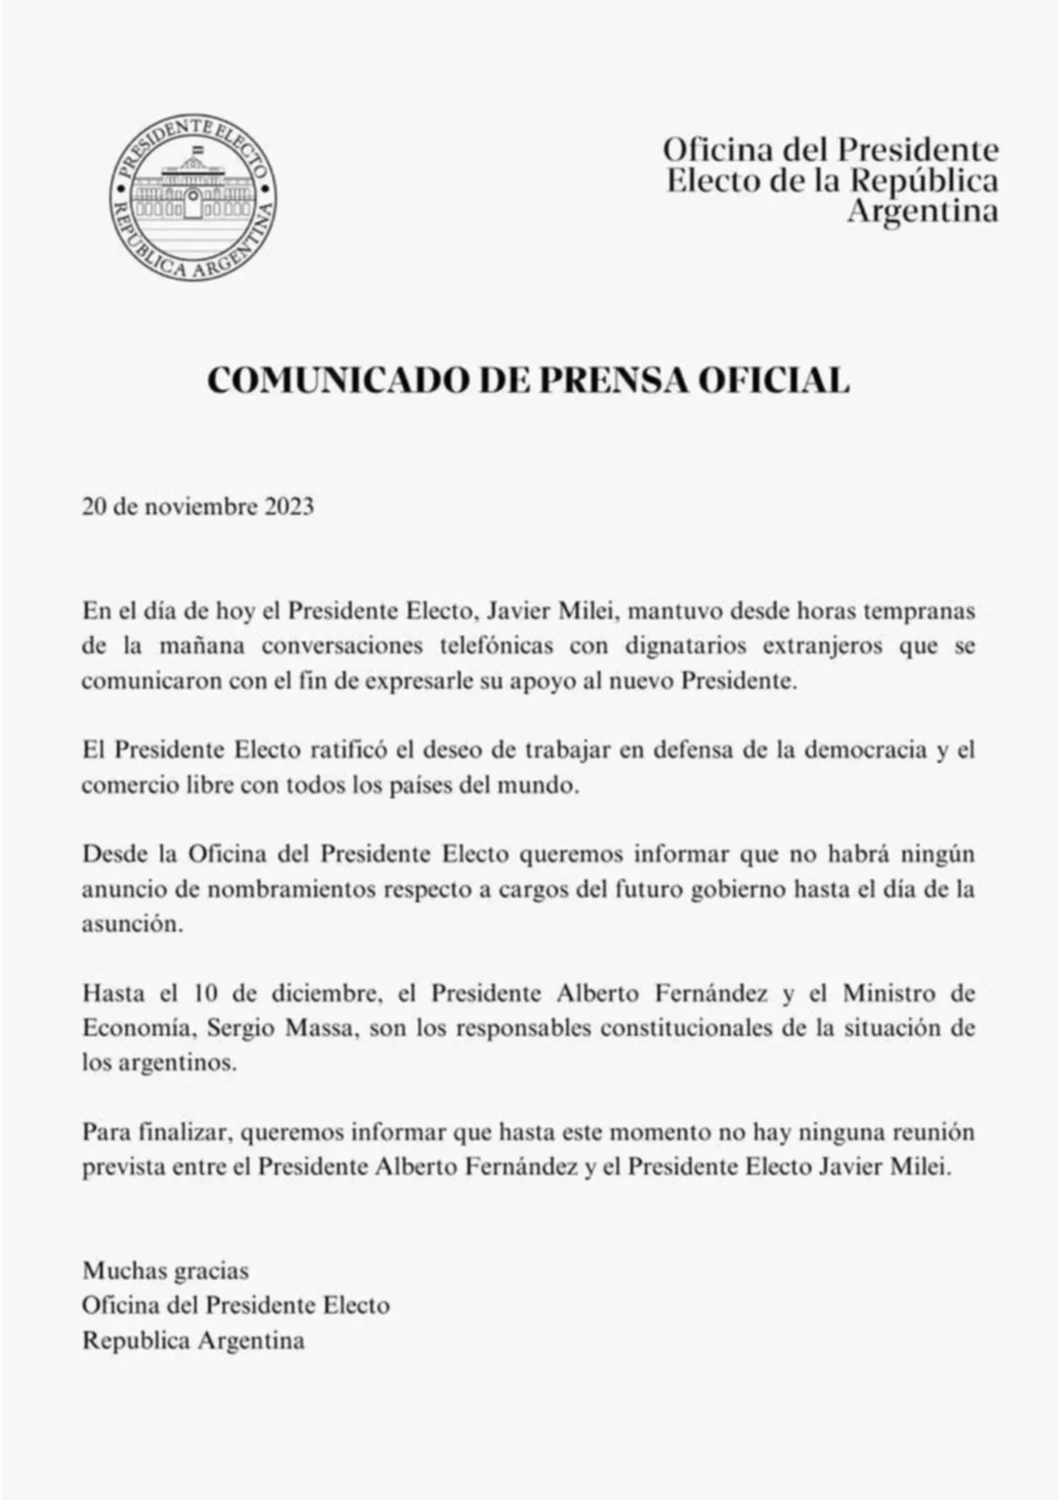 Transición: Javier Milei confirmó que no hay una reunión prevista con Alberto Fernández